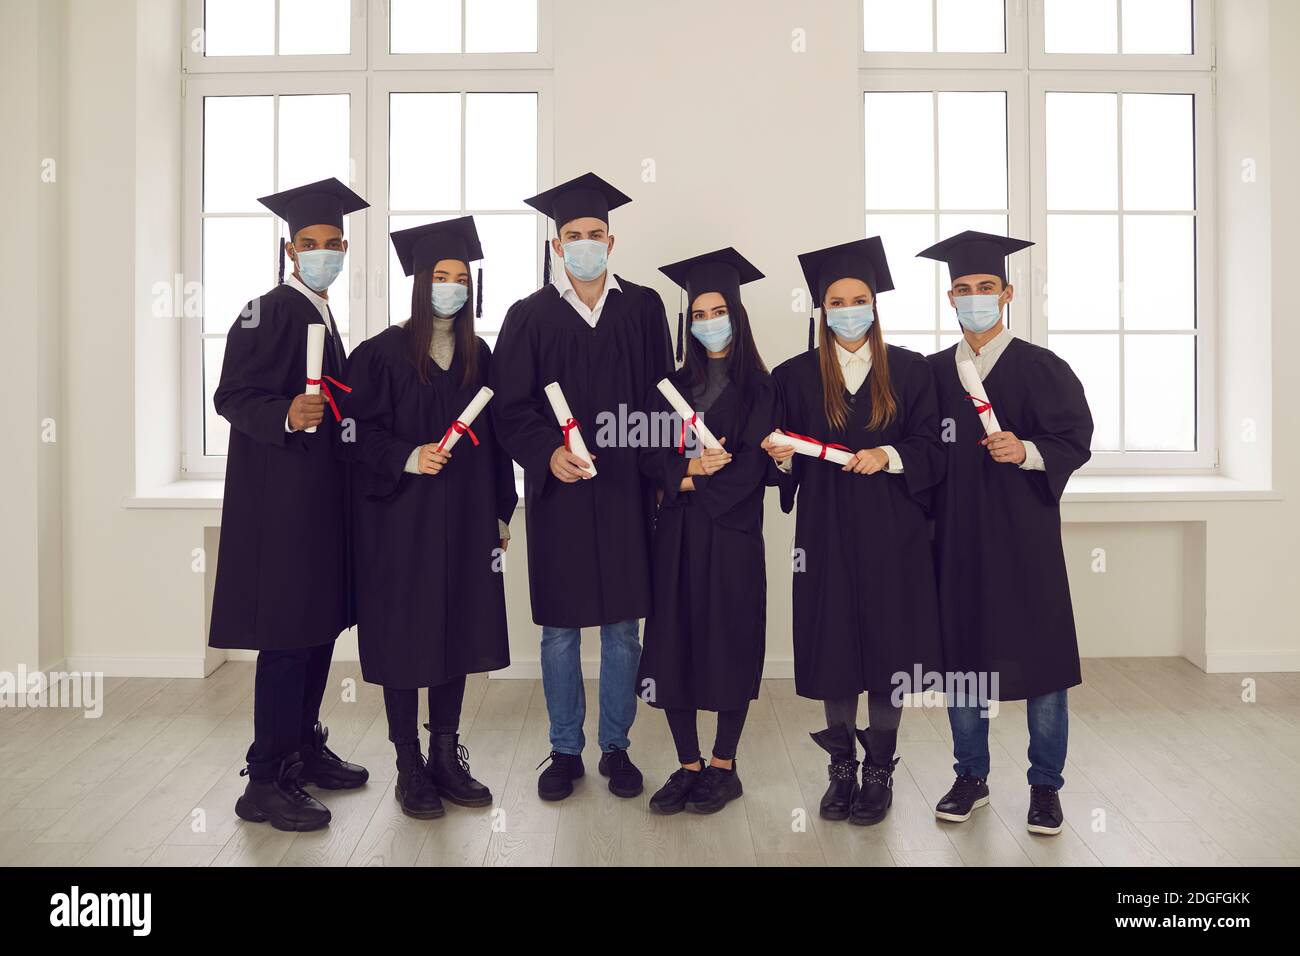 Retrato de estudiantes exitosos con diplomas en sus manos y con máscaras médicas en sus caras. Foto de stock